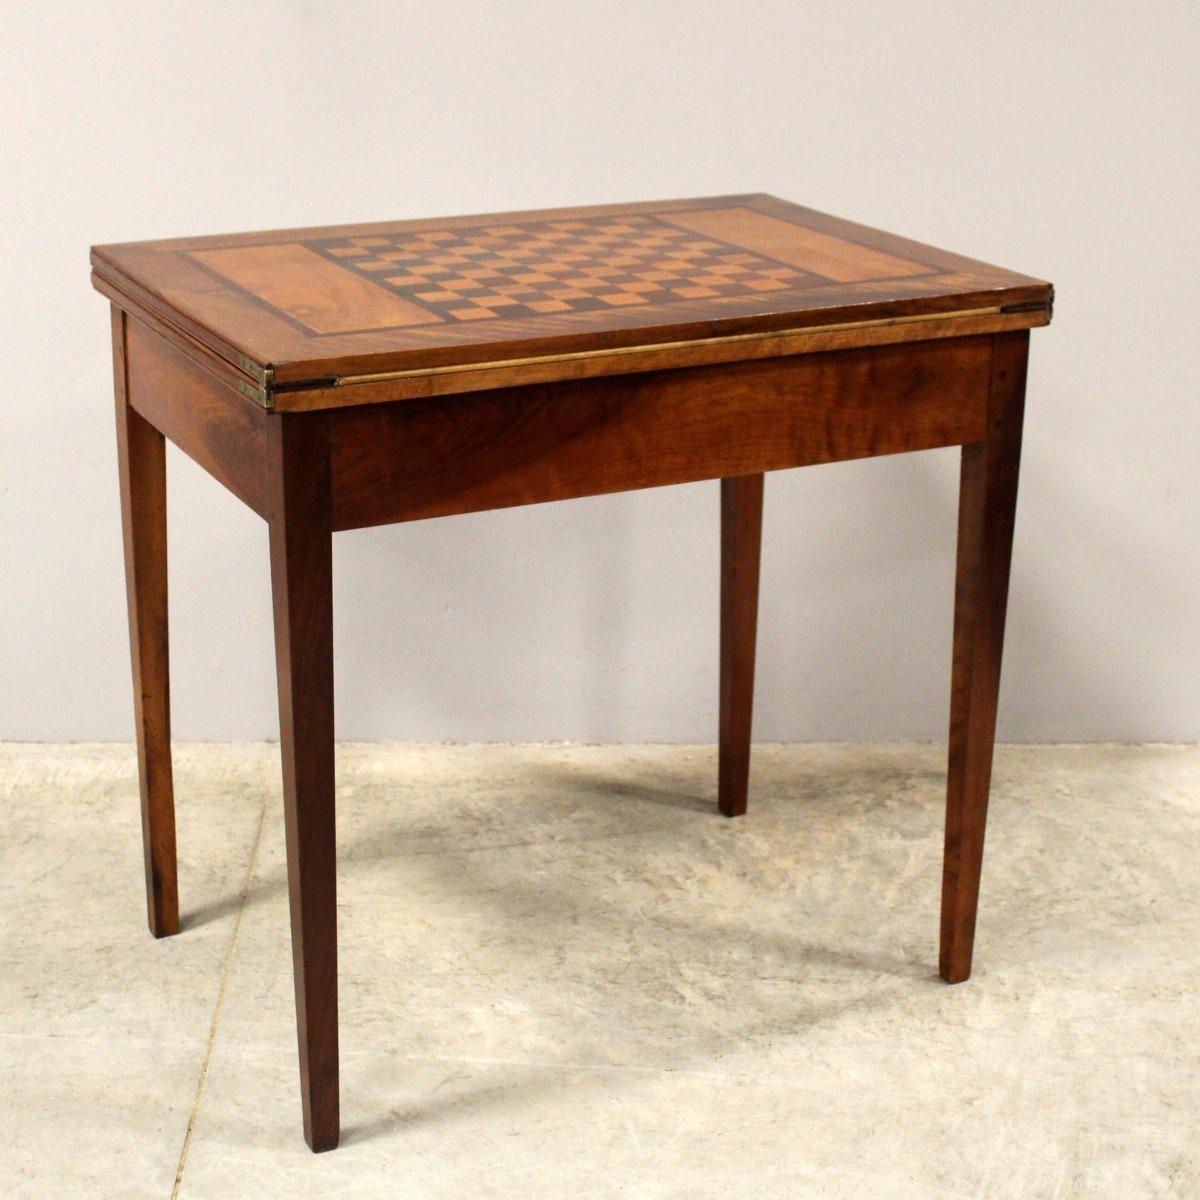 Ein italienischer Spieltisch aus Nussbaum und Mahagoni aus dem 19. Jahrhundert mit schachbrettartig eingelegter Schiebeplatte und spitz zulaufenden Beinen. Dieser italienische Spieltisch aus Nussbaum und Mahagoni aus dem 19. Jahrhundert ist ein